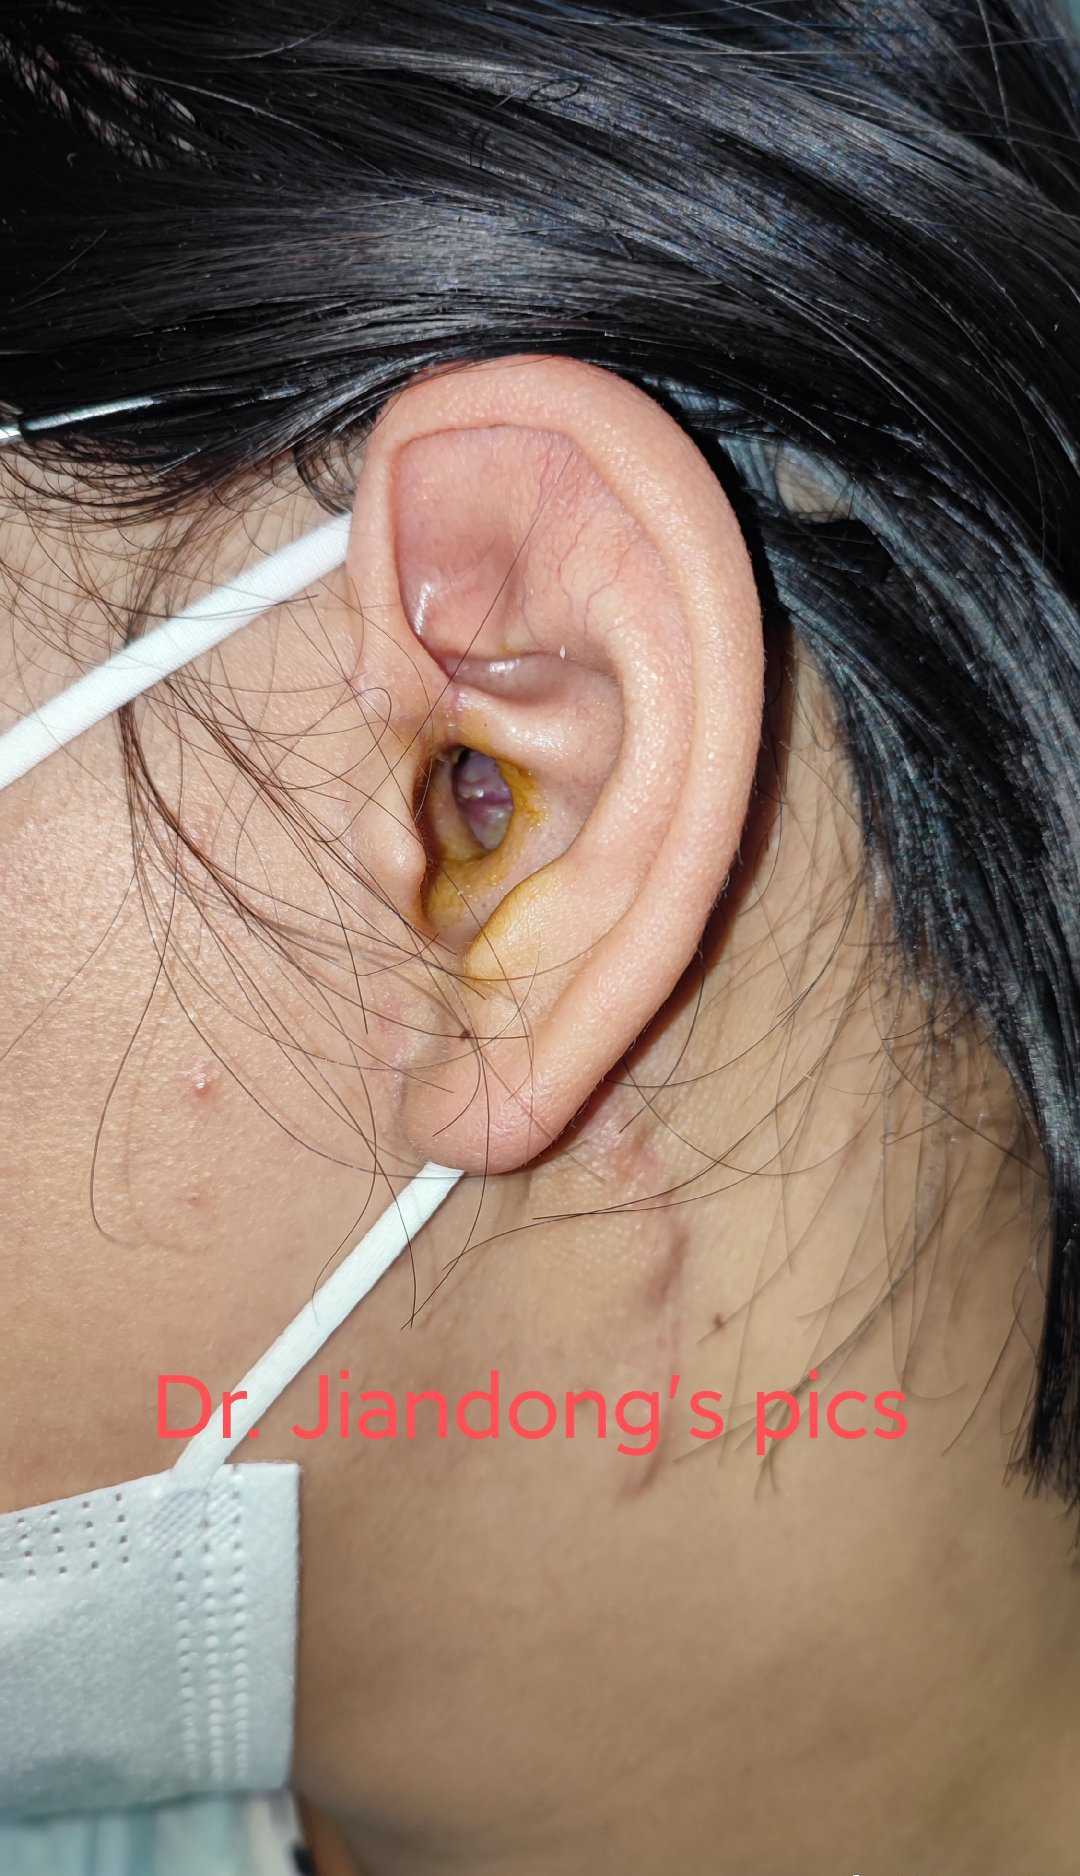 李健东大夫 的想法: 外耳道闭锁,这是术后半年的样子